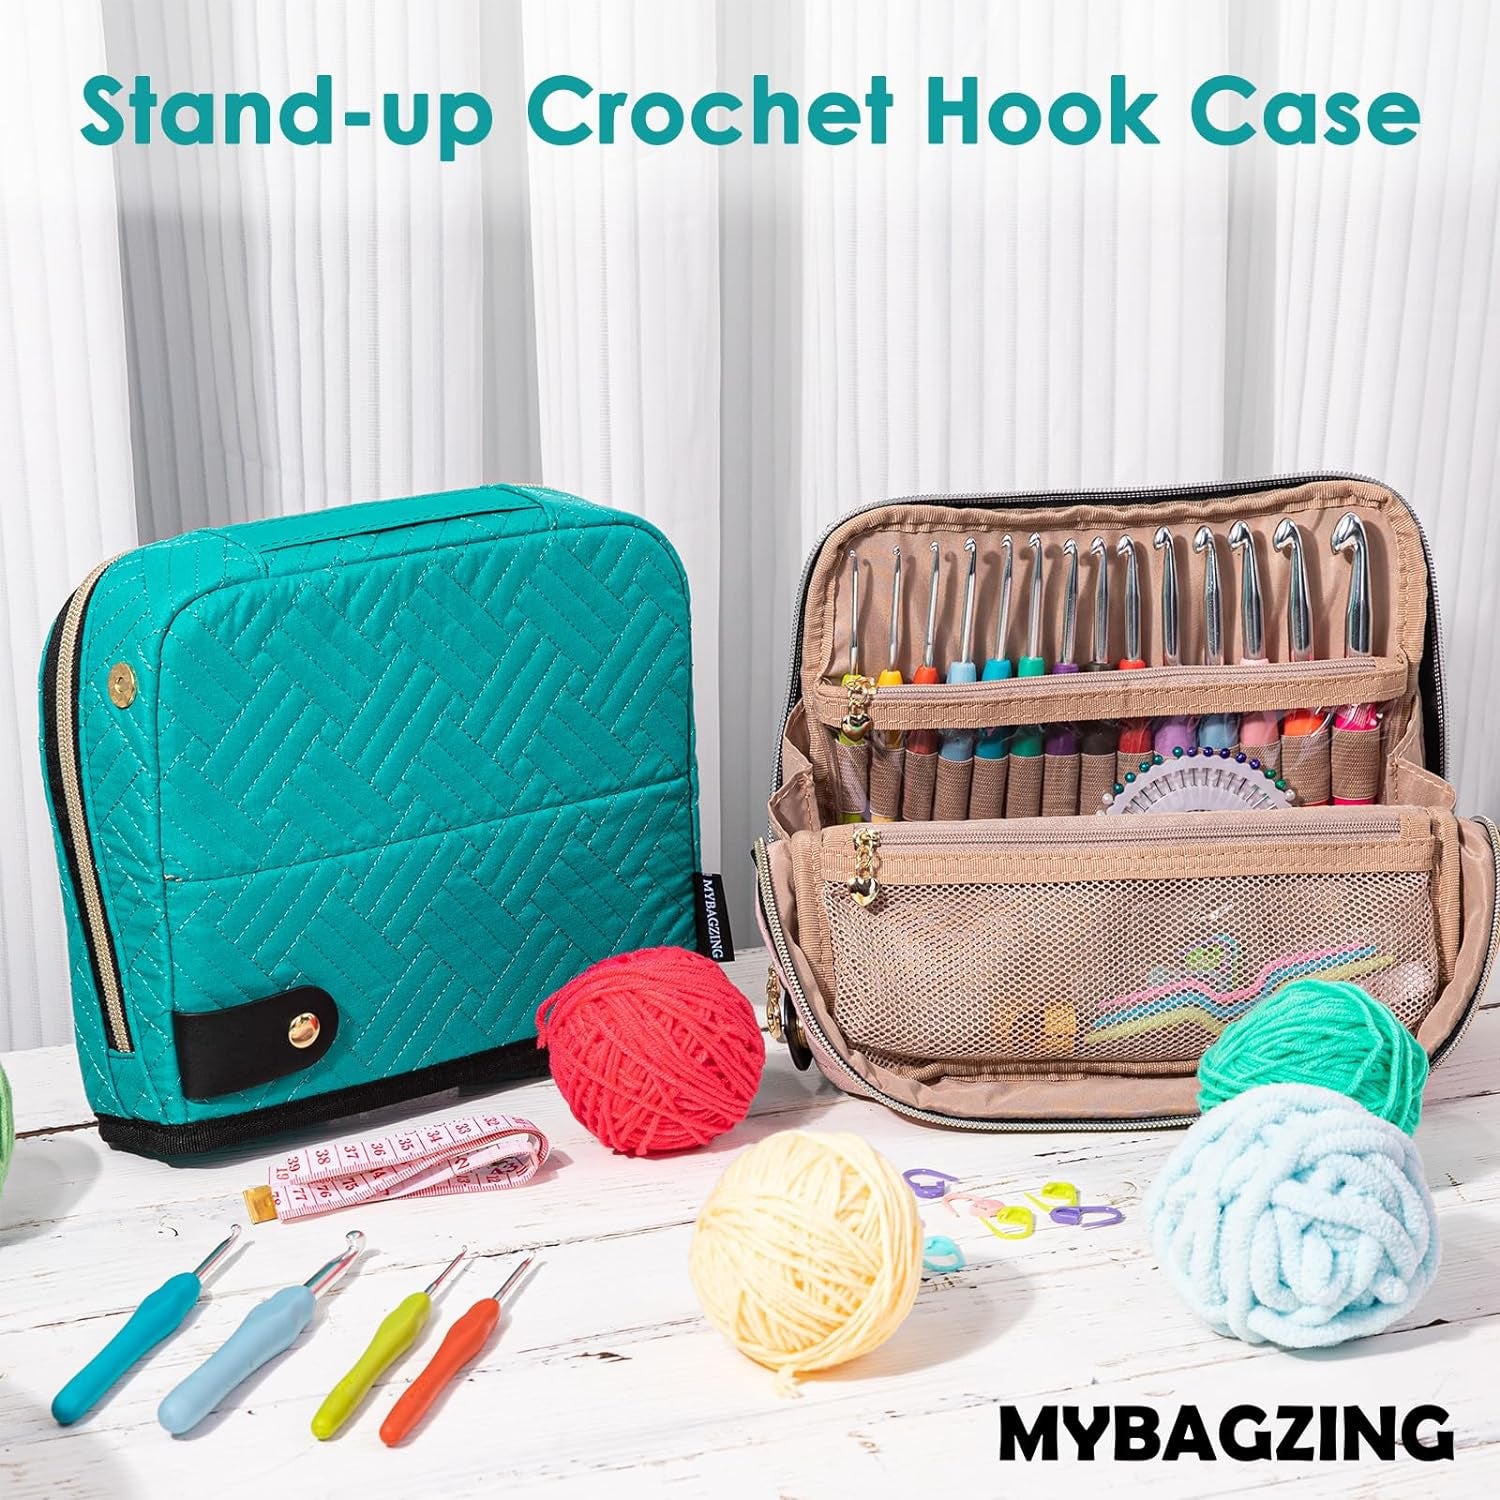 Crochet Hook Case with 14 Size Crochet Hooks Set 2Mm(B)-10Mm(N) Ergonomic Crochet Hooks with Crochet Case Stand up - Crochet Hook Organize for Crochet Lovers, Crochet Kit for Beginners